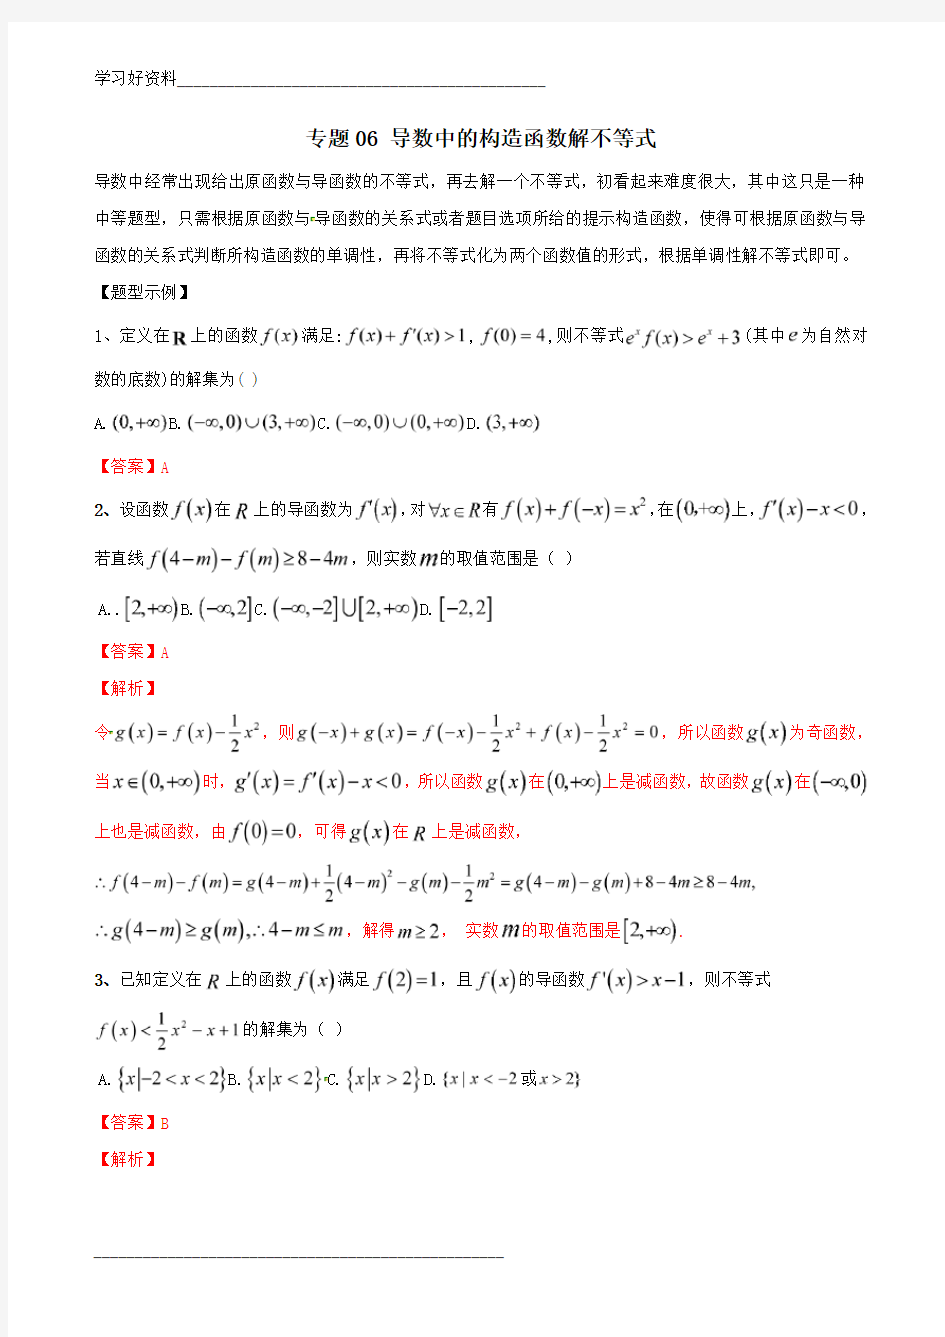 专题06 导数中的构造函数解不等式-2019年高考数学总复习之典型例题突破(压轴题系列)(解析版)